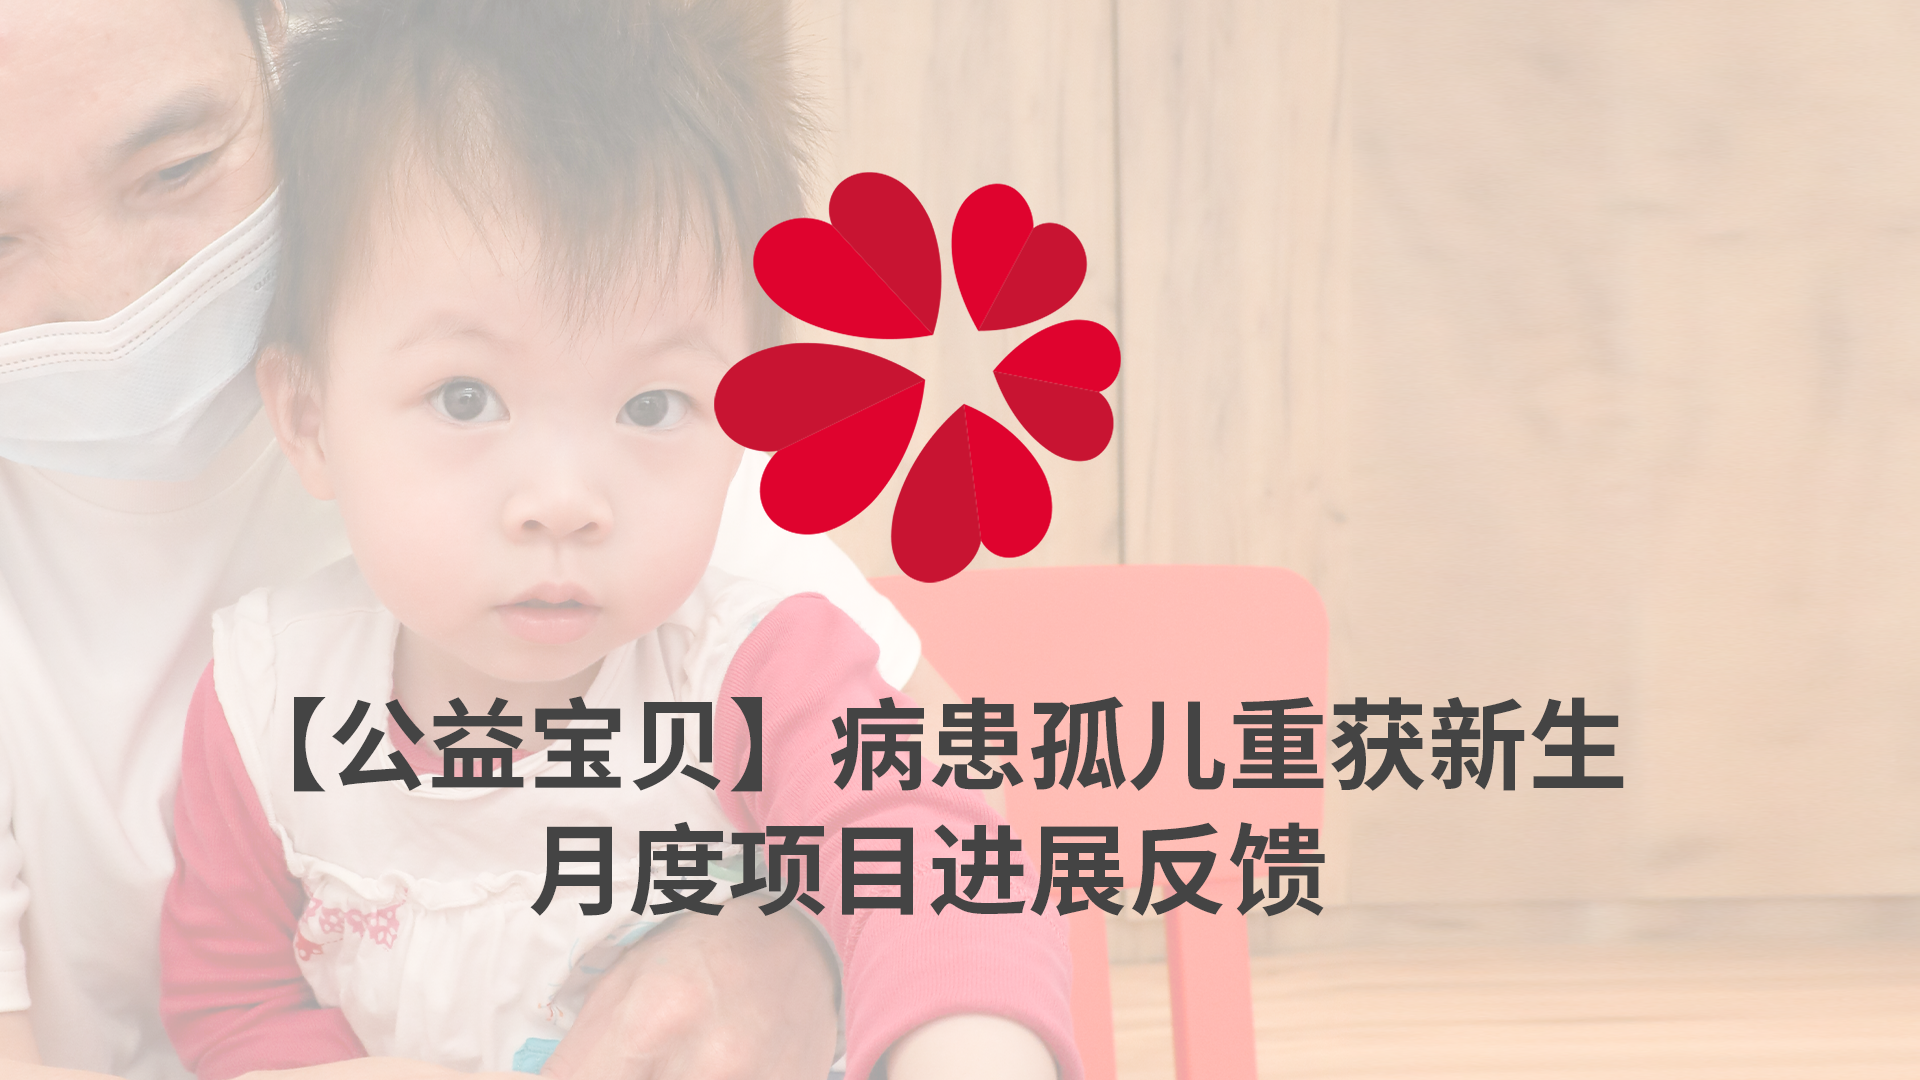 【XIN 益佰项目】病患孤儿重获新生 2023 年 7 月项目进展反馈